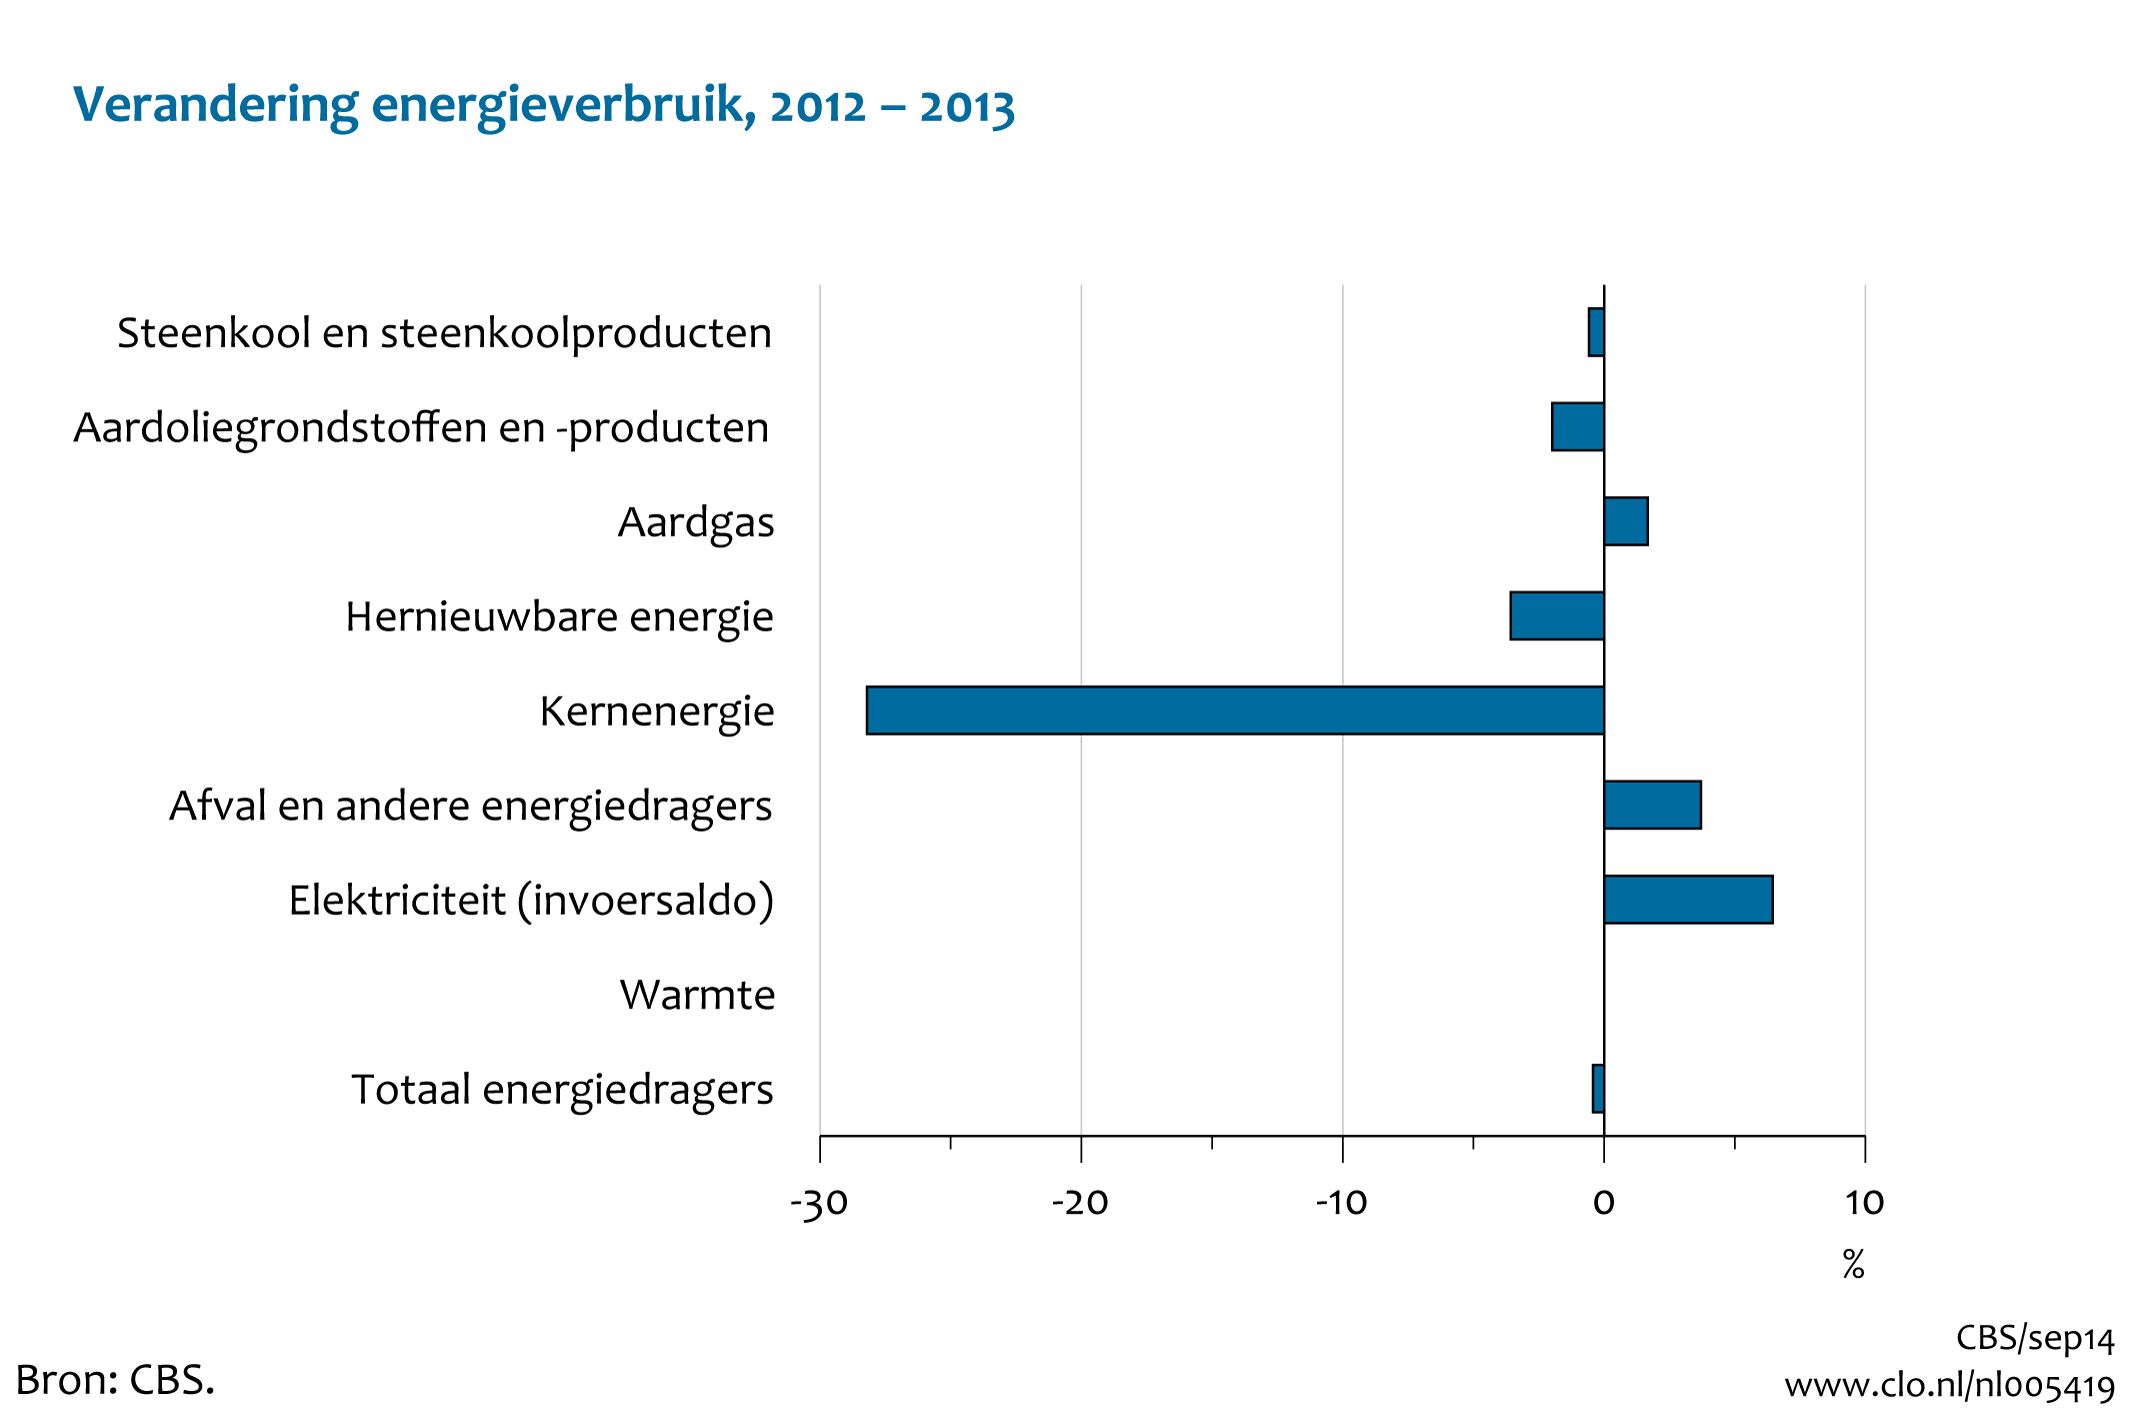 Figuur Mutatie energieverbruik 2013** t.o.v. 2012. In de rest van de tekst wordt deze figuur uitgebreider uitgelegd.